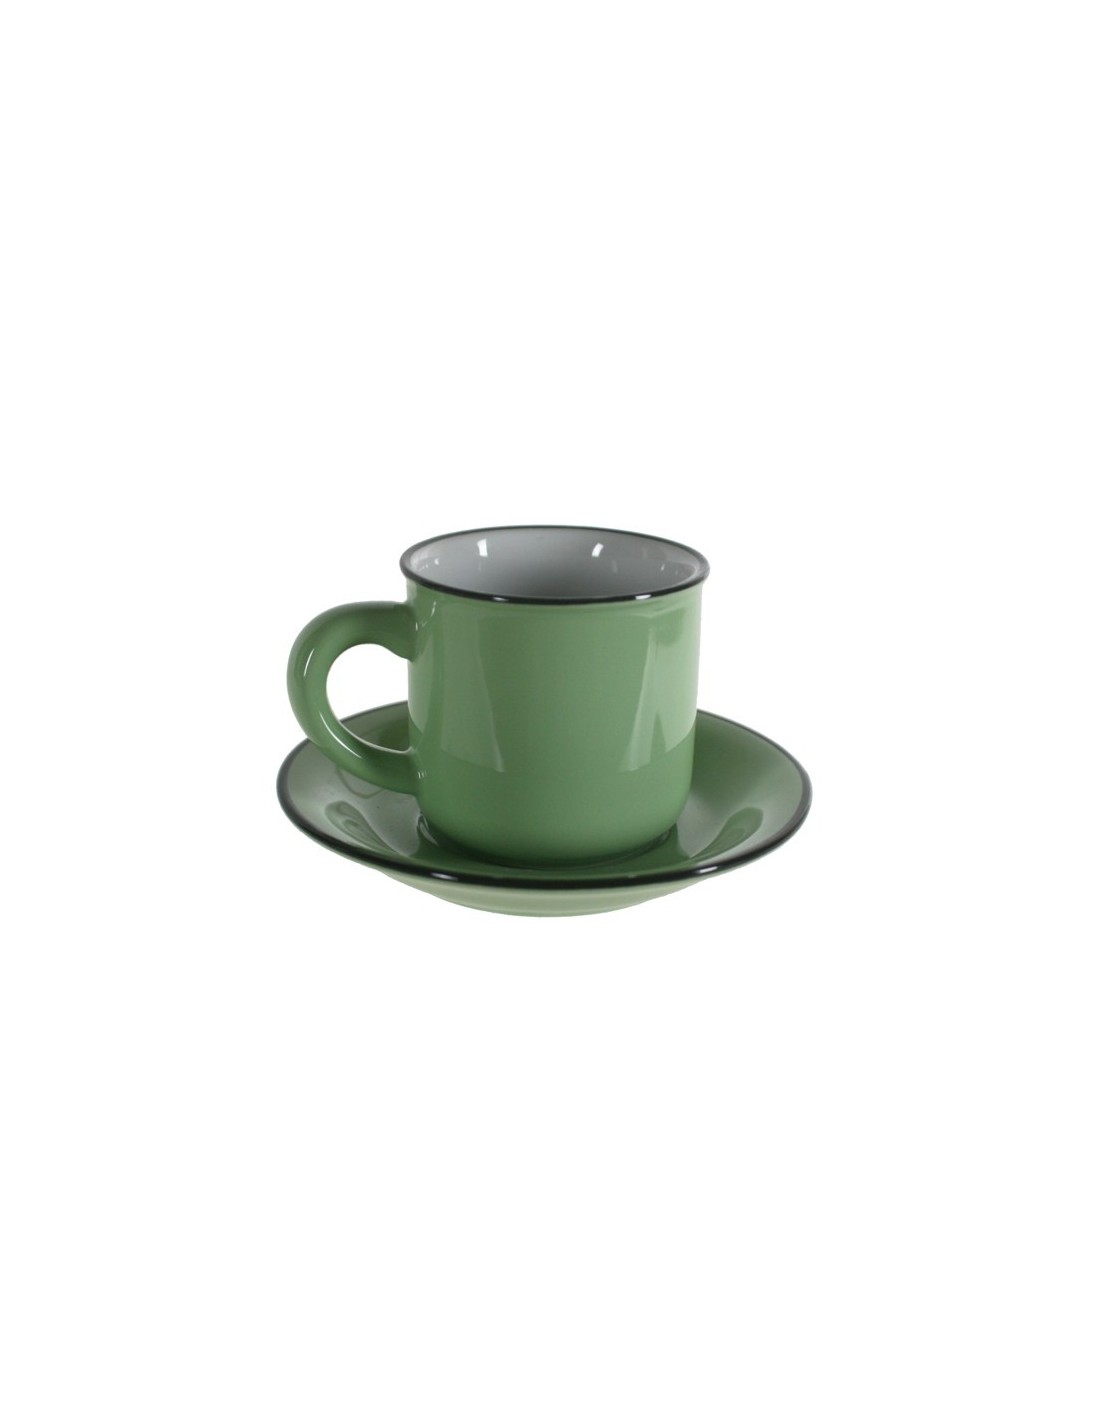 Taza de café con plato estilo vintage retro color verde con bordes negros servicio de mesa 